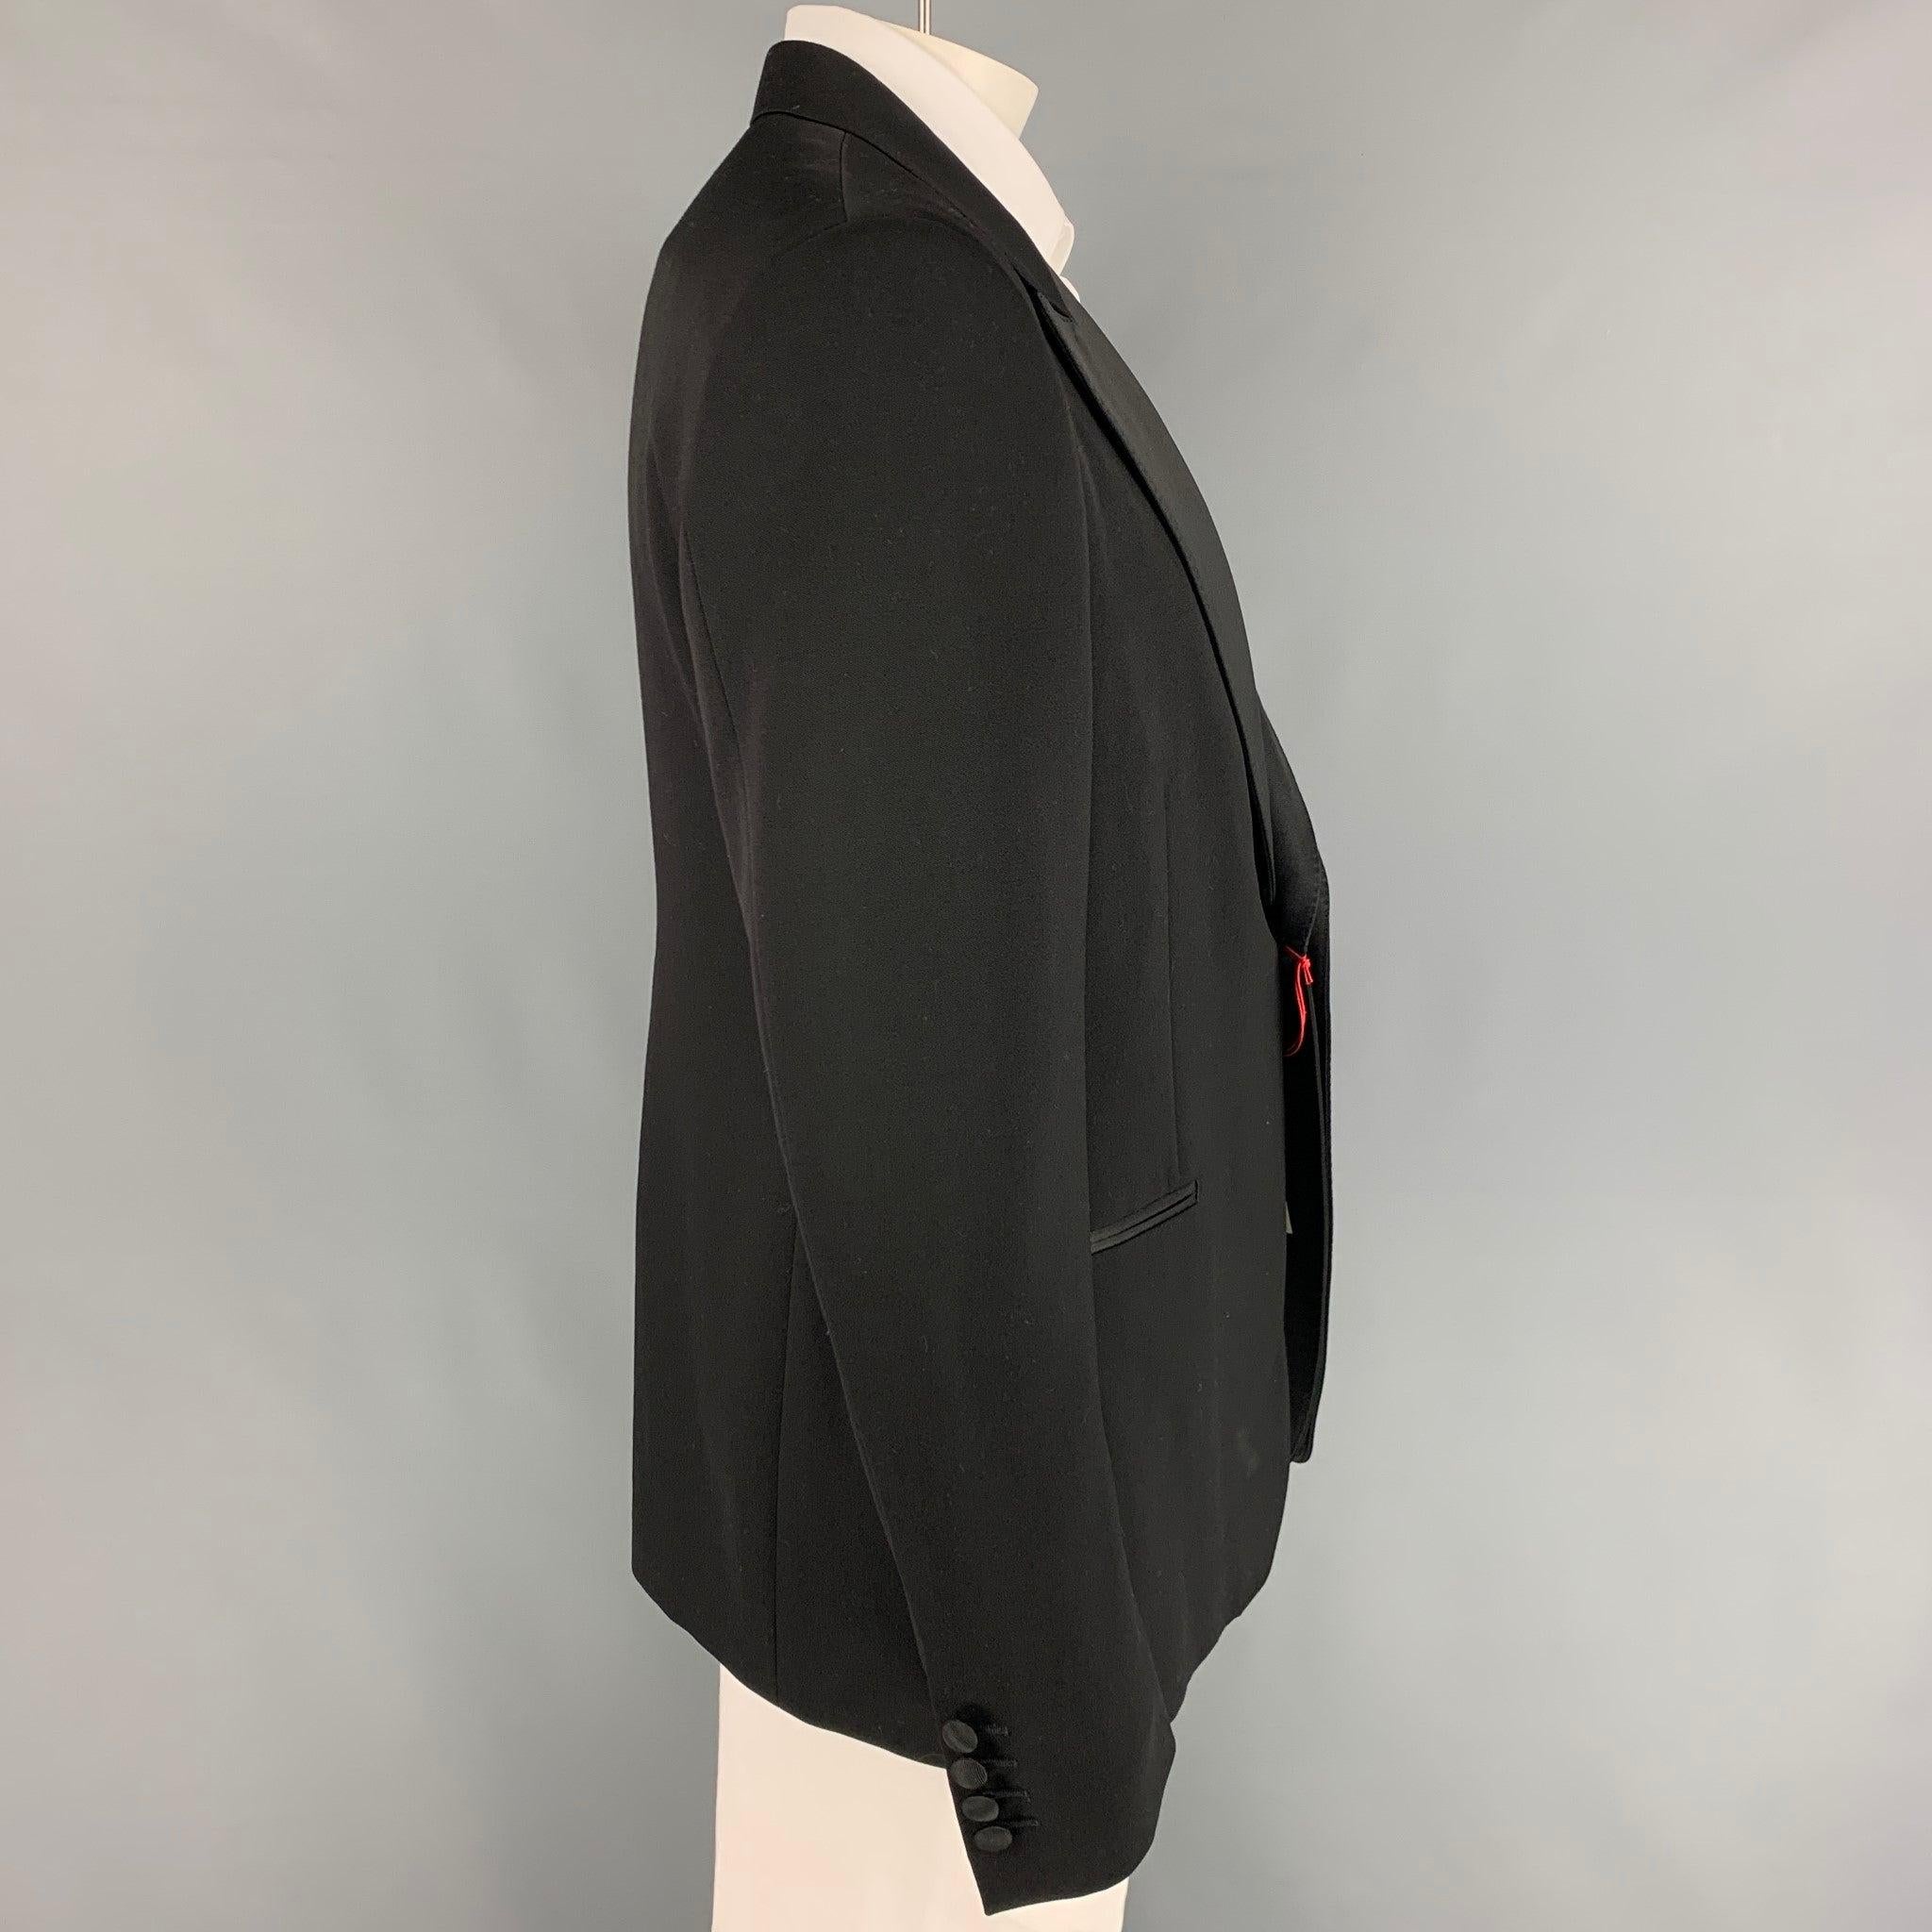 Le manteau de sport ALEXANDER McQUEEN est en laine noire et entièrement doublé. Il présente un revers à double pointe, des poches fendues, une fente d'aération au dos et se ferme par un bouton. Fabriquées en Italie.
Nouveau avec des étiquettes.